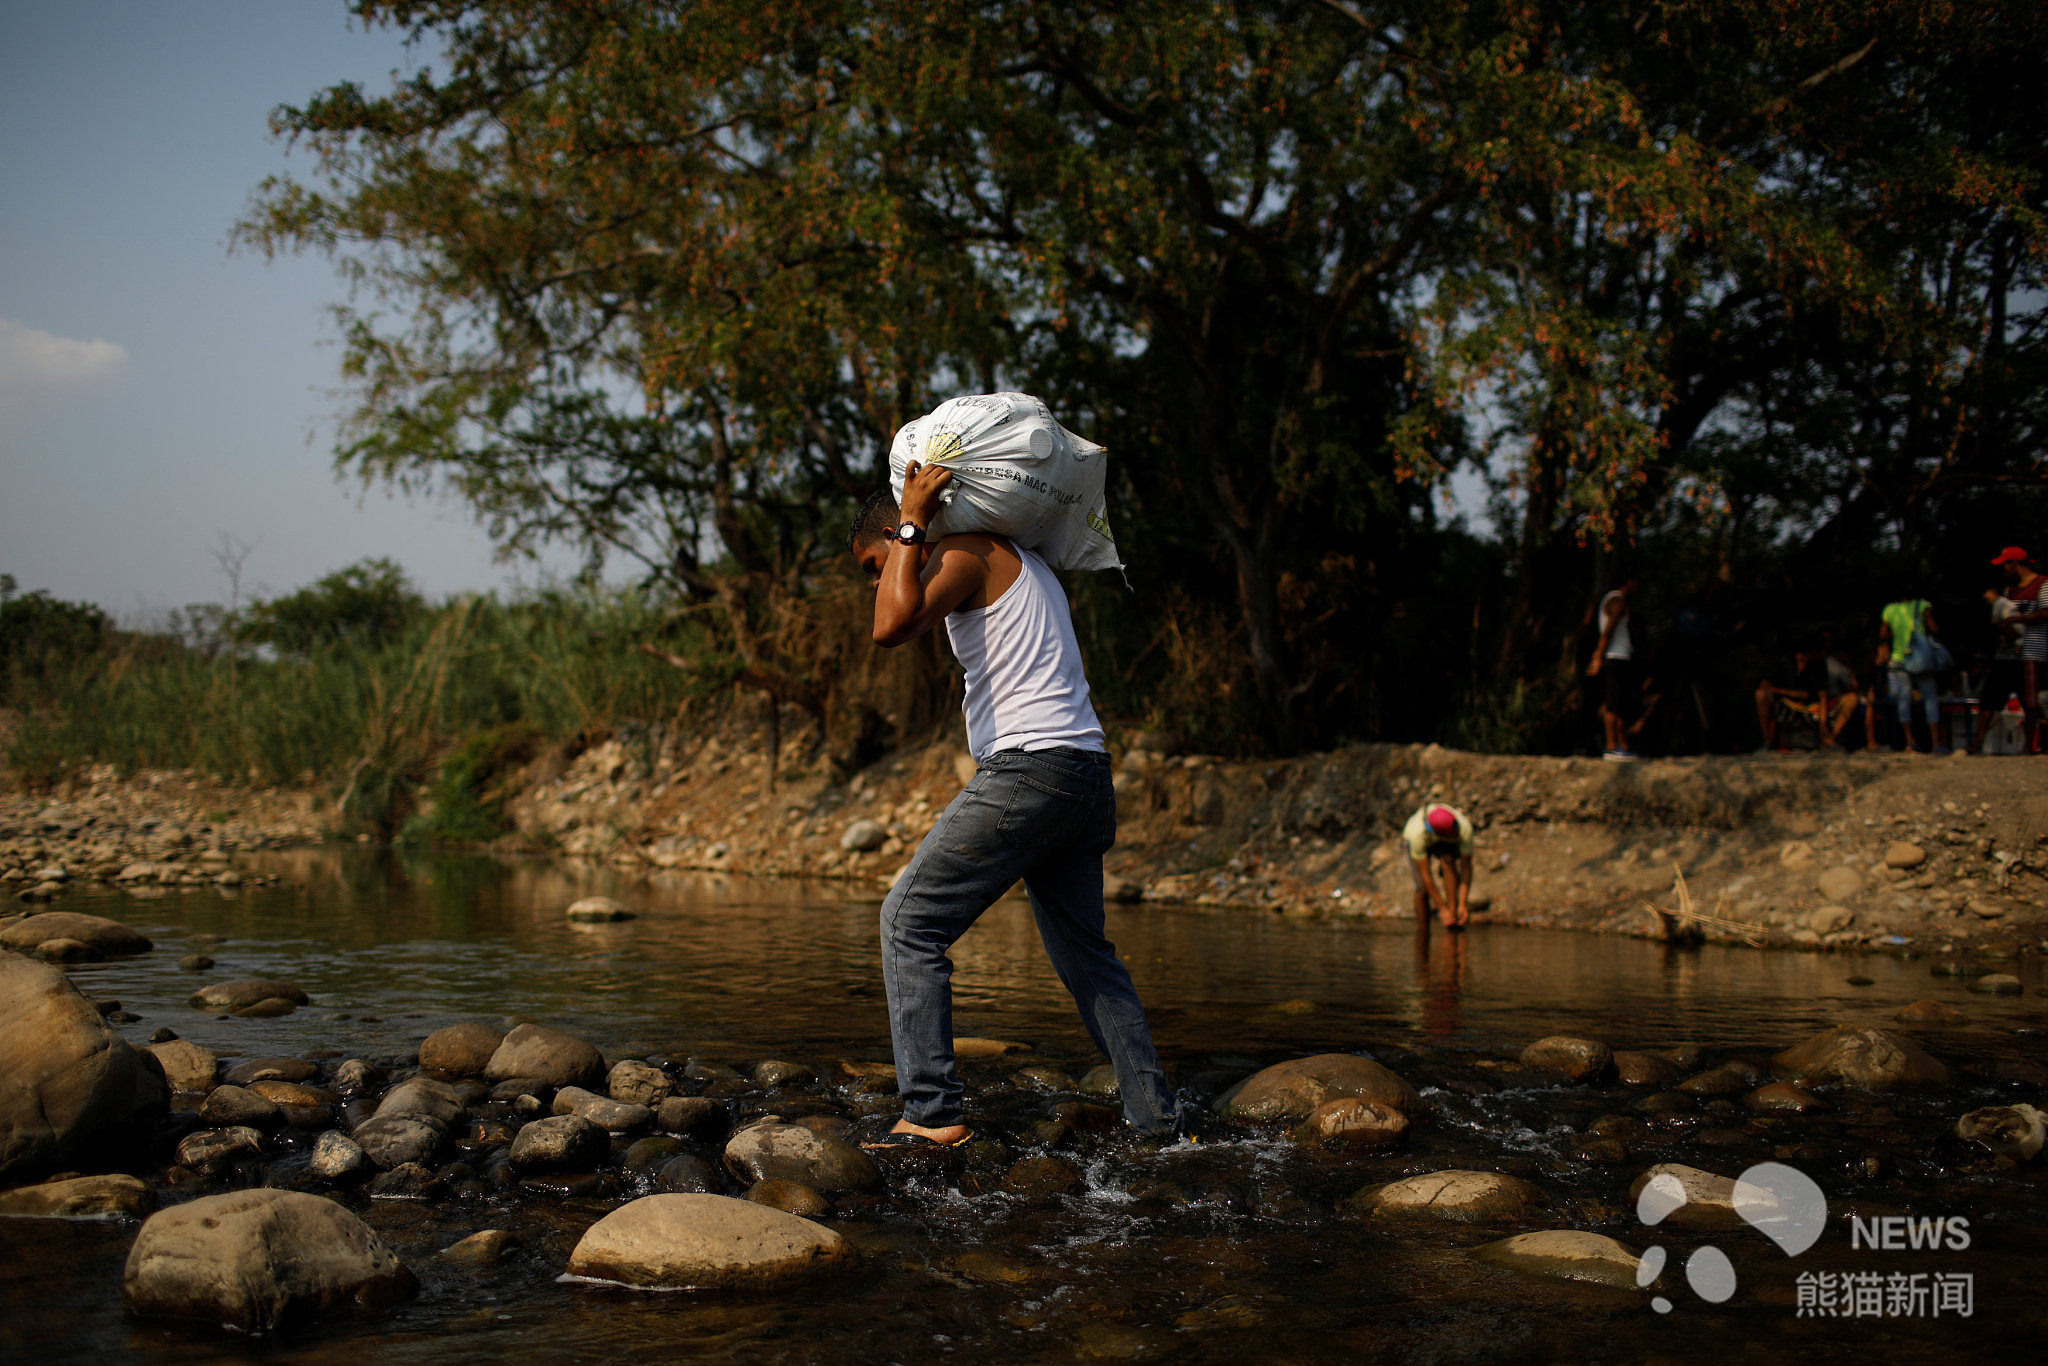 局势动荡缺衣少食 委内瑞拉人赤手徒步从邻国